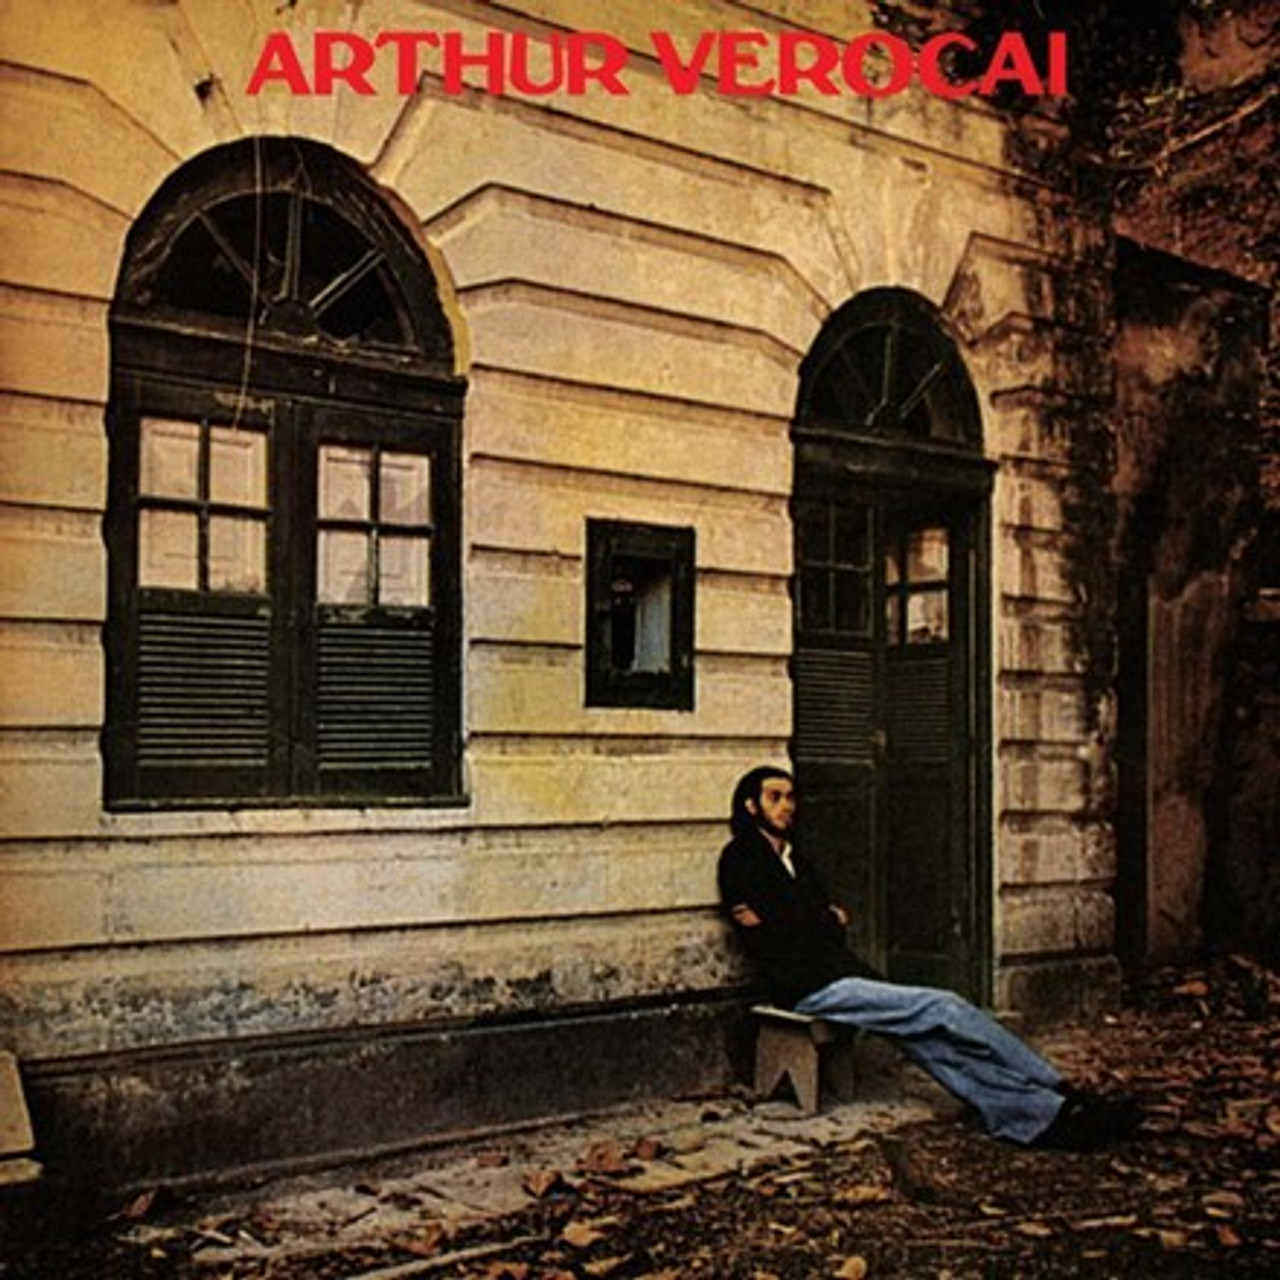 Timeless Affairs: Arthur Verocai